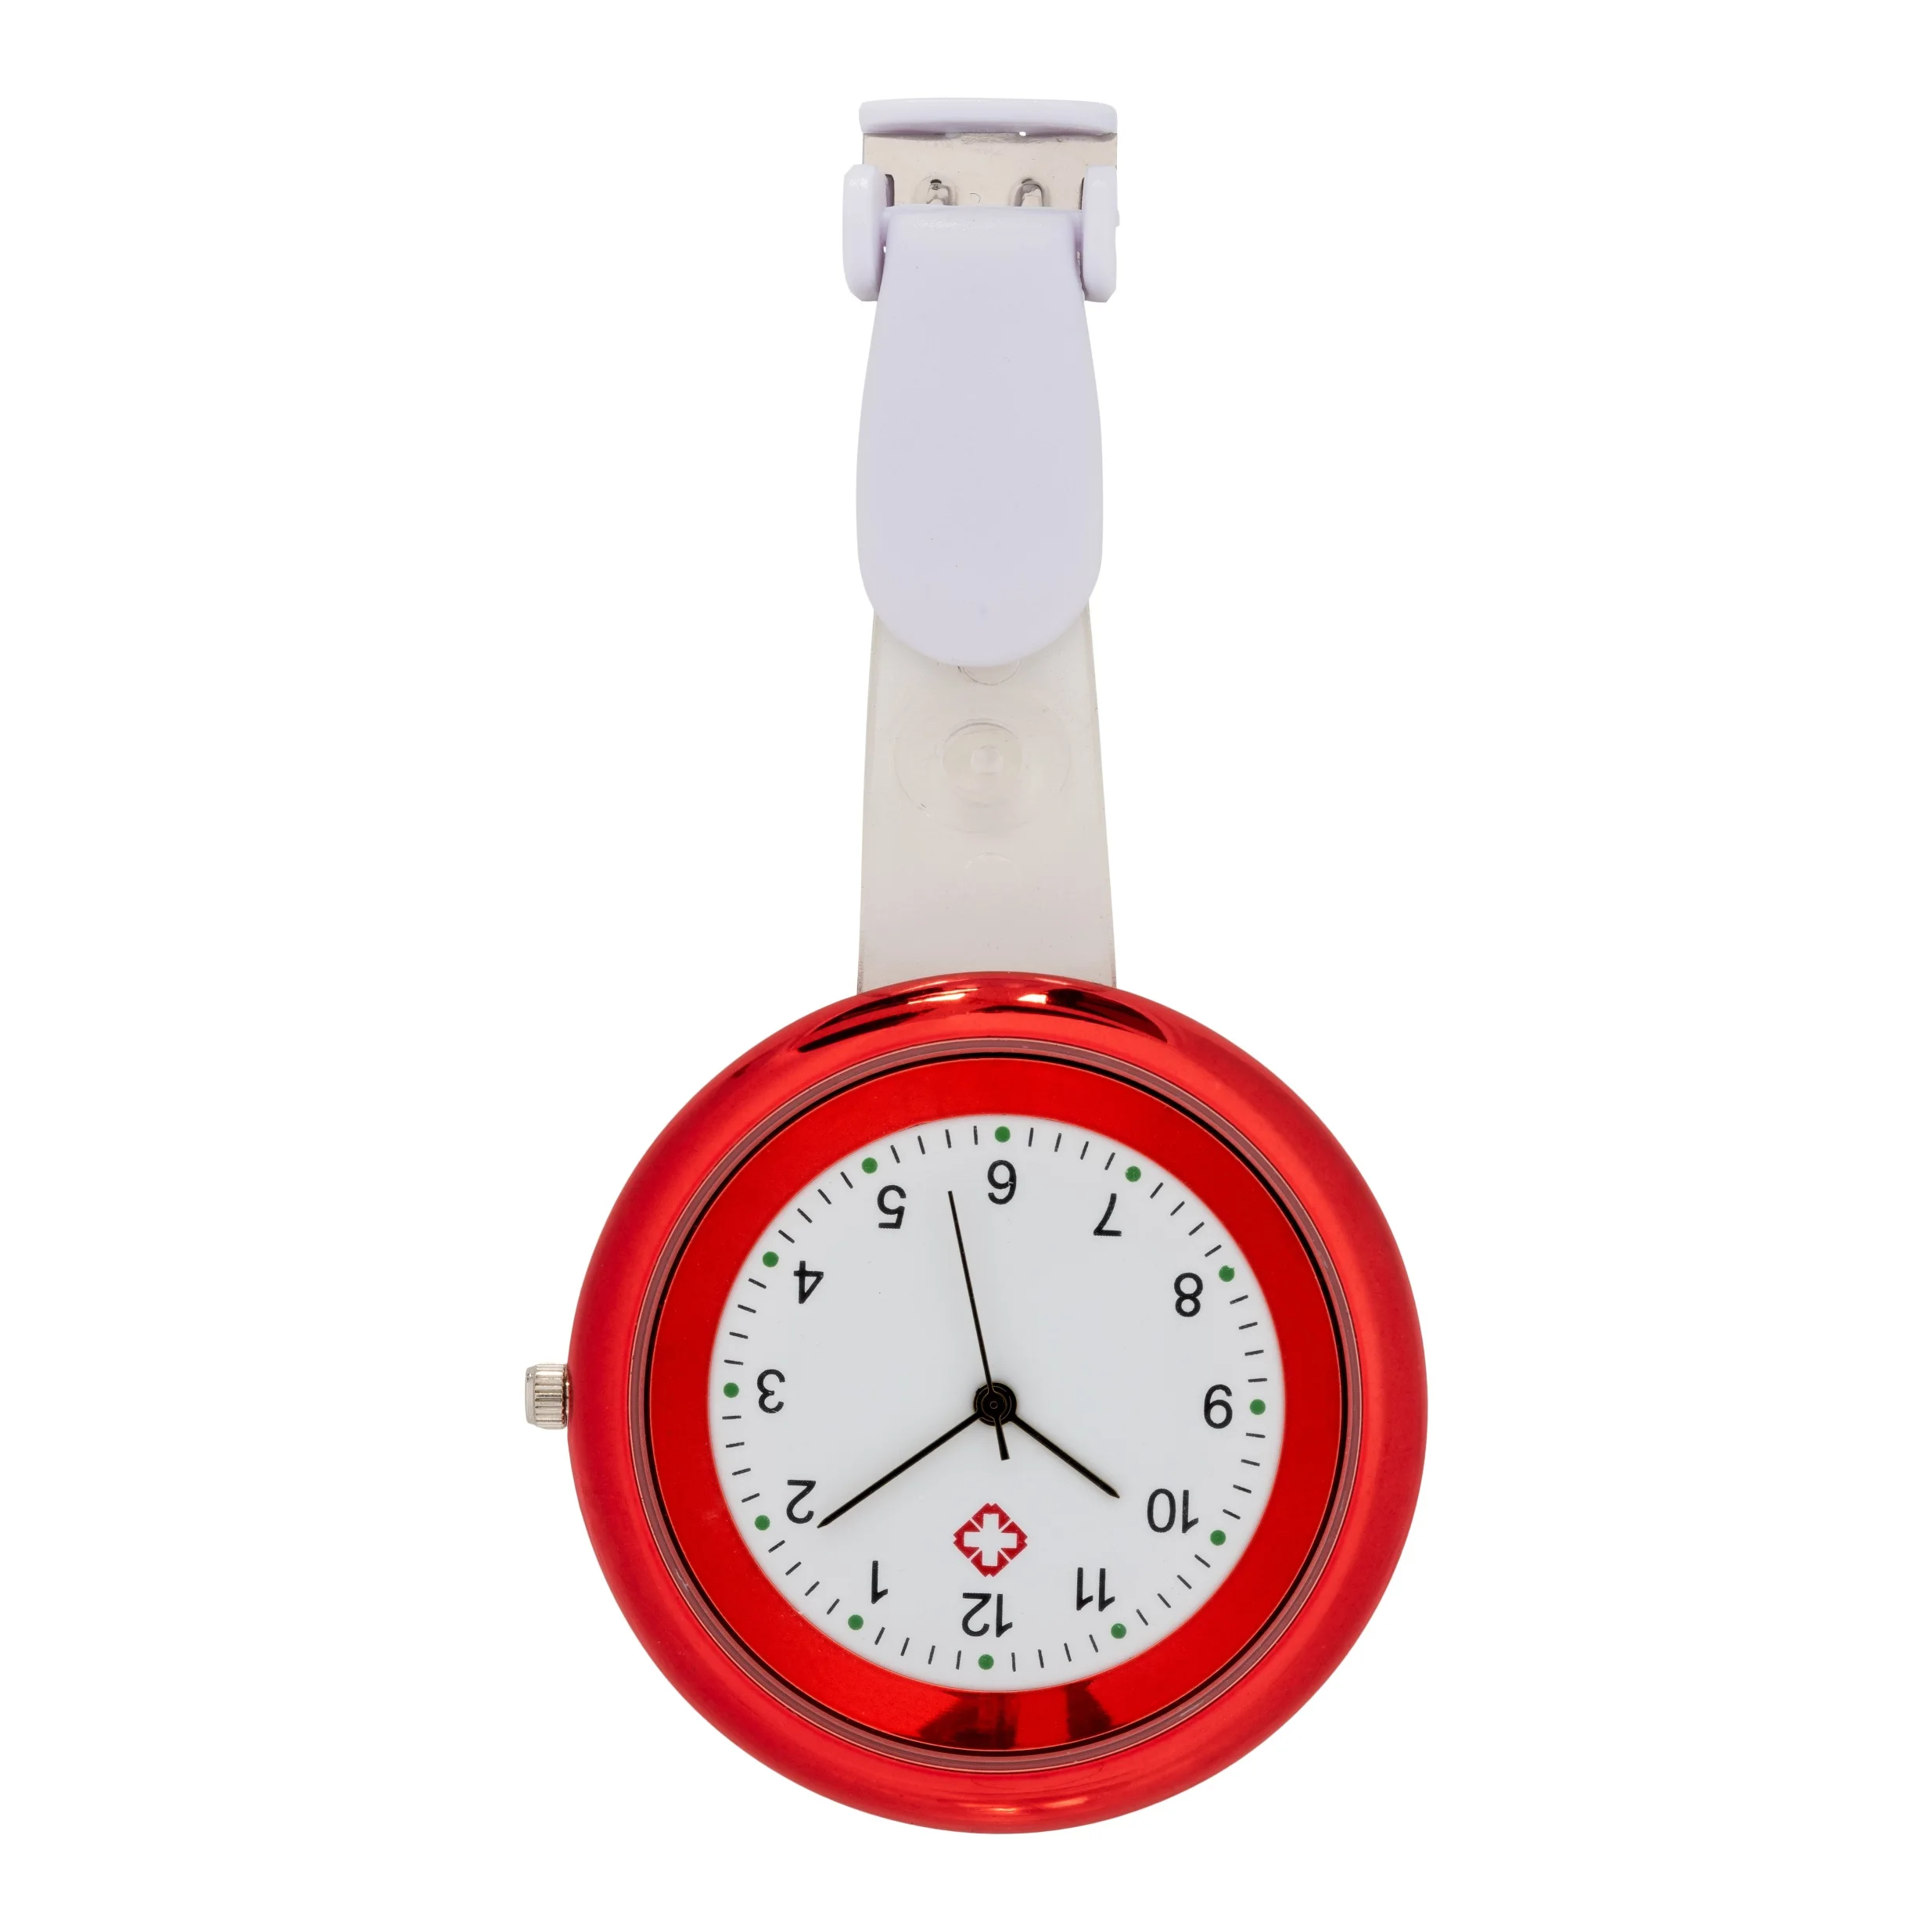 houder Afdrukken Ongemak Nieuwe Horloge Voor Verpleegkundige Of Arts Verpleegster Horloge Goed Cadeau  Voor Verpleegster - Buy Infinity Verpleegster Horloge,Verpleegster Horloge,Zakhorloge  Product on Alibaba.com